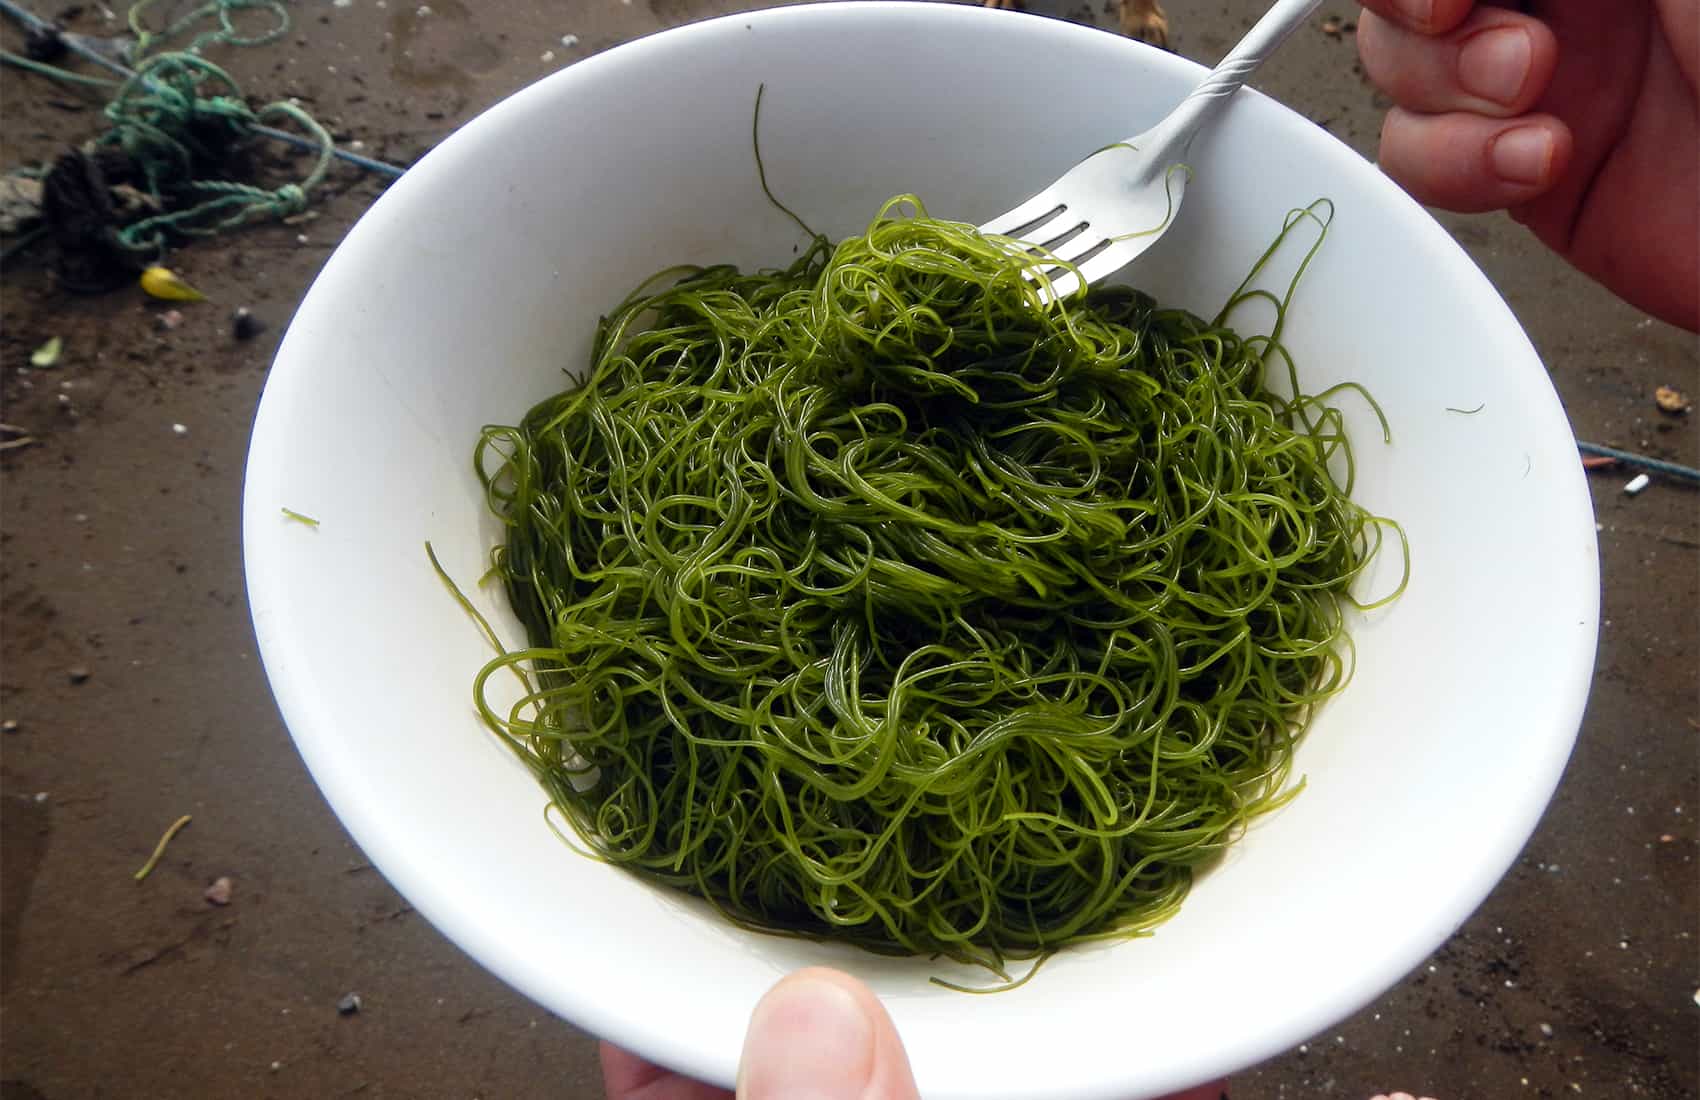 Edible seaweed farming in Costa Rica